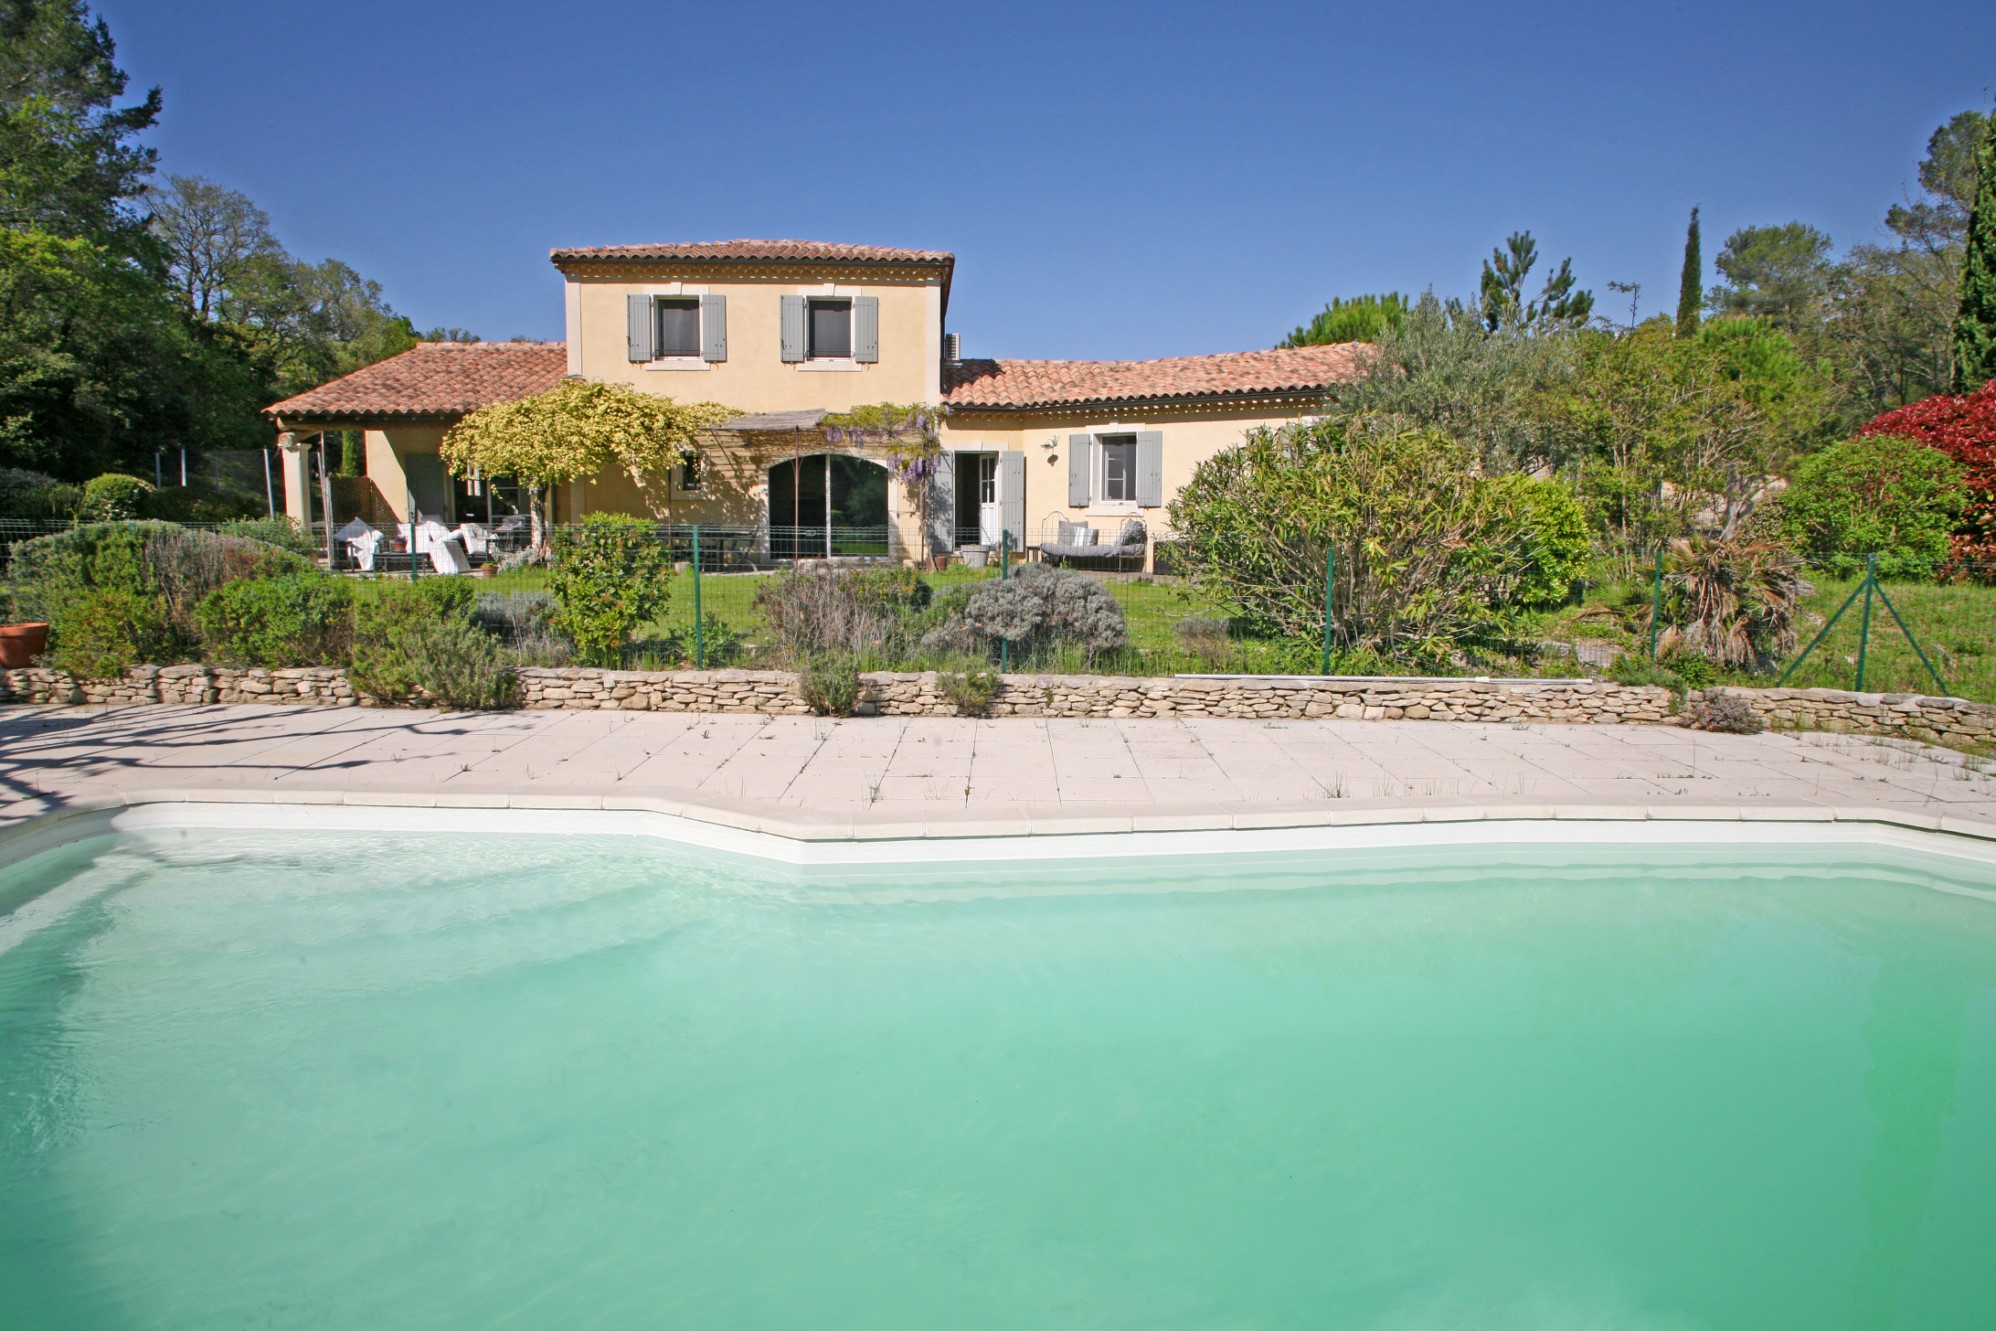 Maison traditionnelle avec piscine aux portes du Luberon